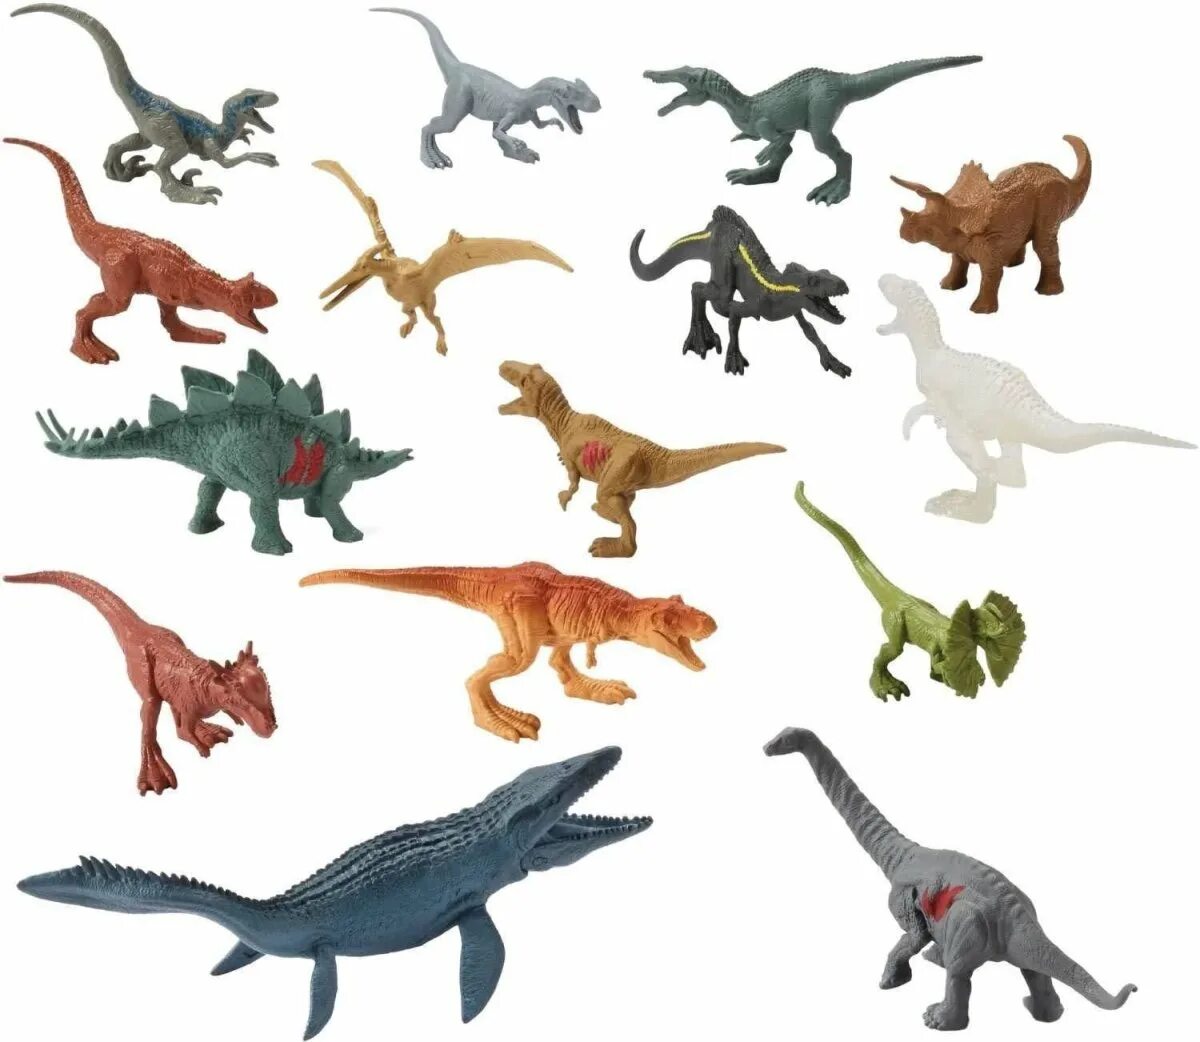 Mattel Jurassic World мини динозавров. Игрушки динозавры мир Юрского периода 2. Коллекция динозавров джурасик парк. Мир Юрского периода игрушки травоядные. Динозавры сборник